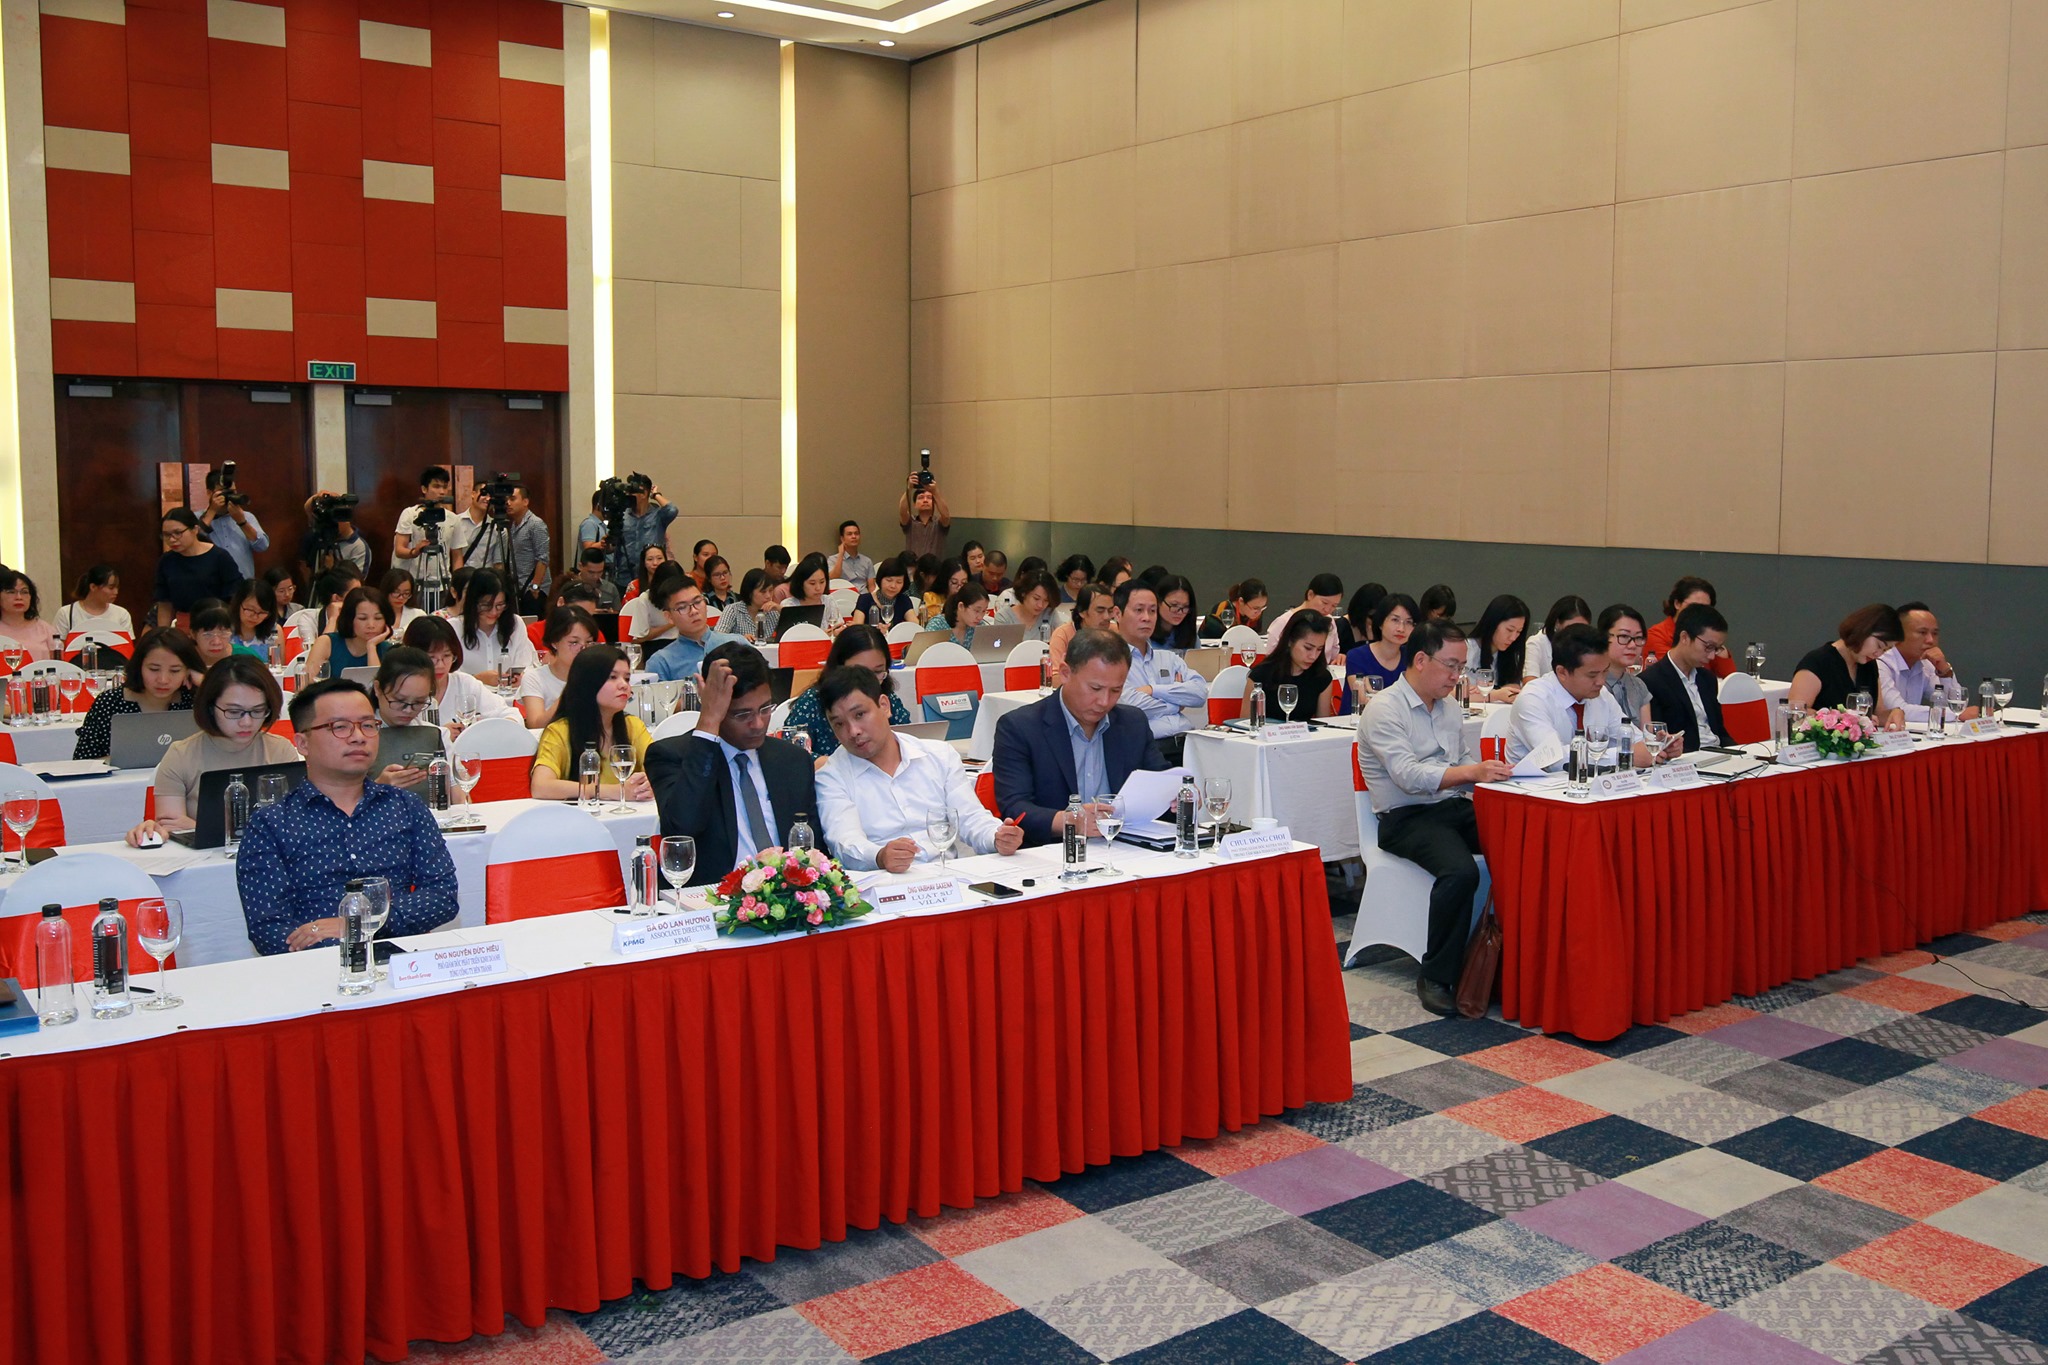 Diễn đàn M&A thường niên lần thứ 11 năm 2019 do Báo Đầu tư và Công ty AVM Việt Nam tổ chức với chủ đề “Thay đổi để bứt phá” sẽ diễn ra tại Trung tâm Hội nghị GEM, TP.HCM vào thứ Ba, ngày 6/8/2019.